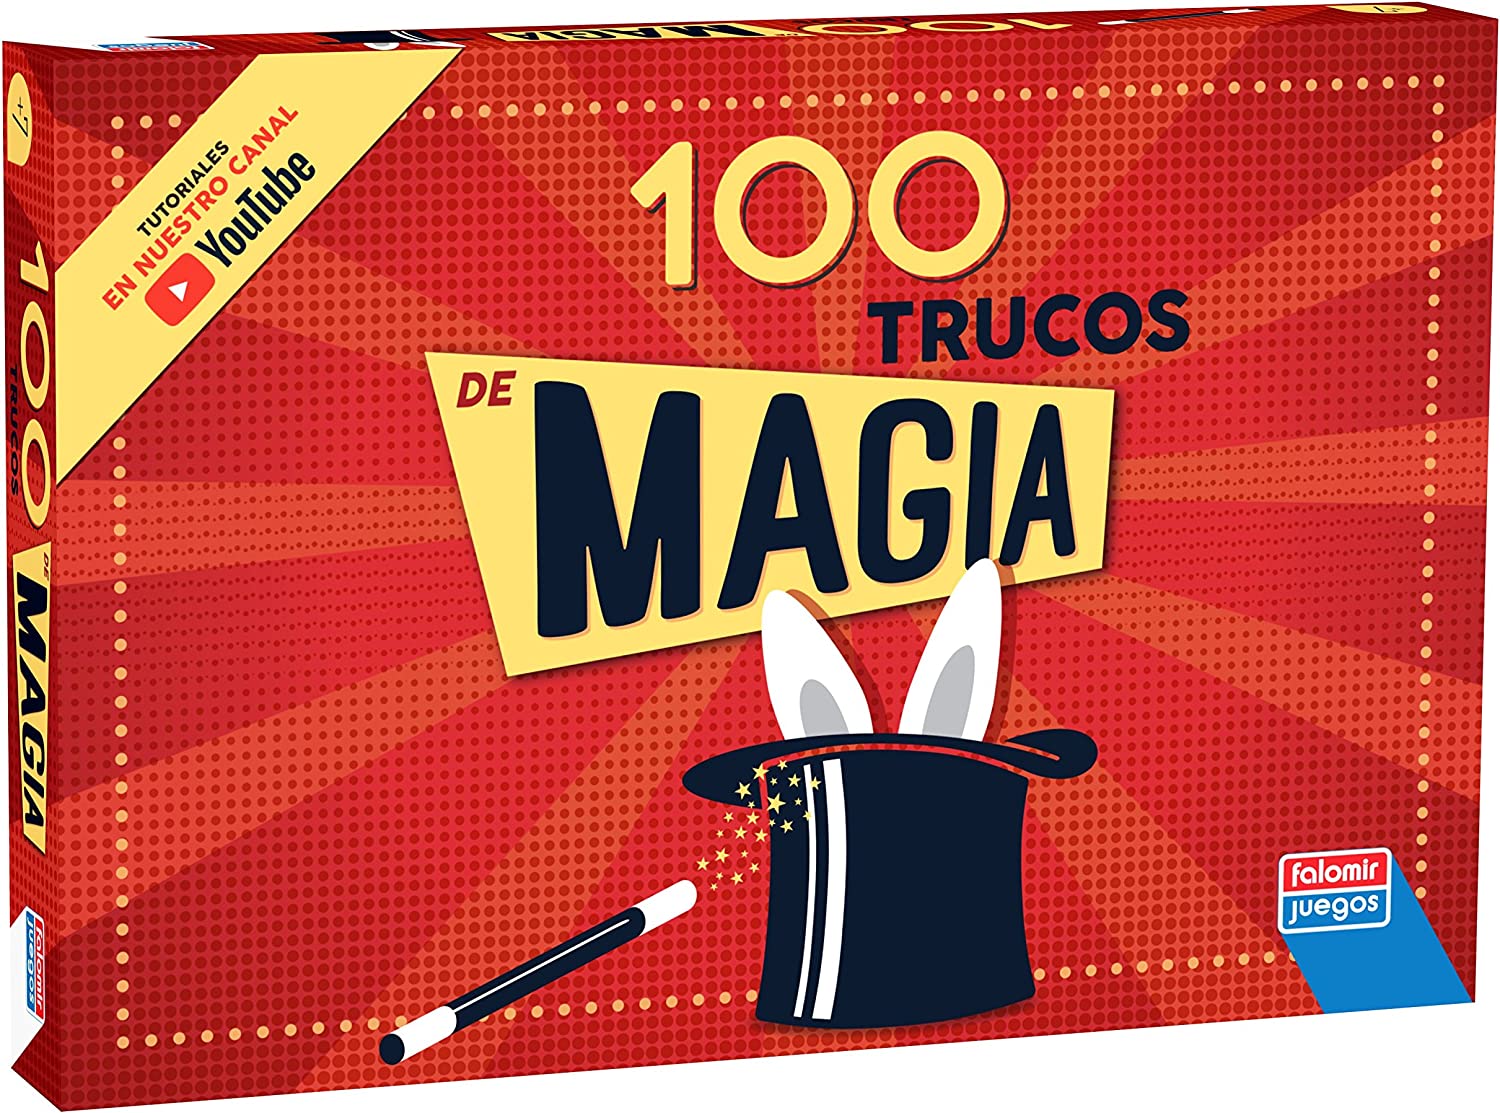 CAJA MAGIA 100 TRUCOS 1060 - V29022